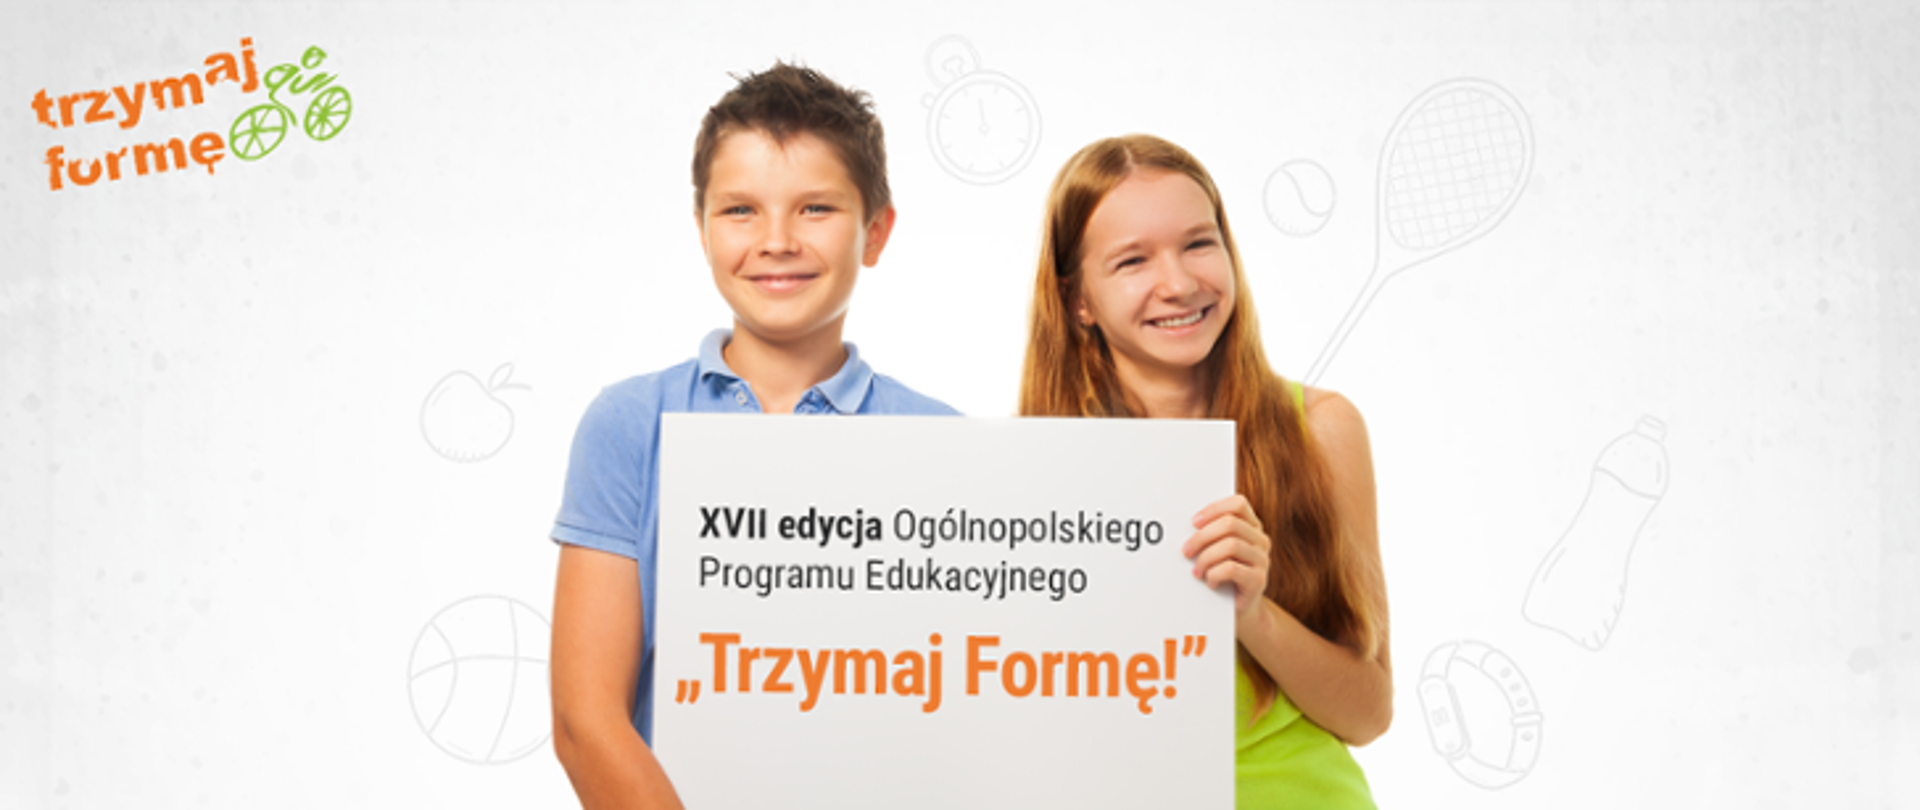 Dwoje dzieci trzymająca baner z napisem: "XVII edycja Ogólnopolskiego Programu Edukacyjnego Trzymaj Formę!"